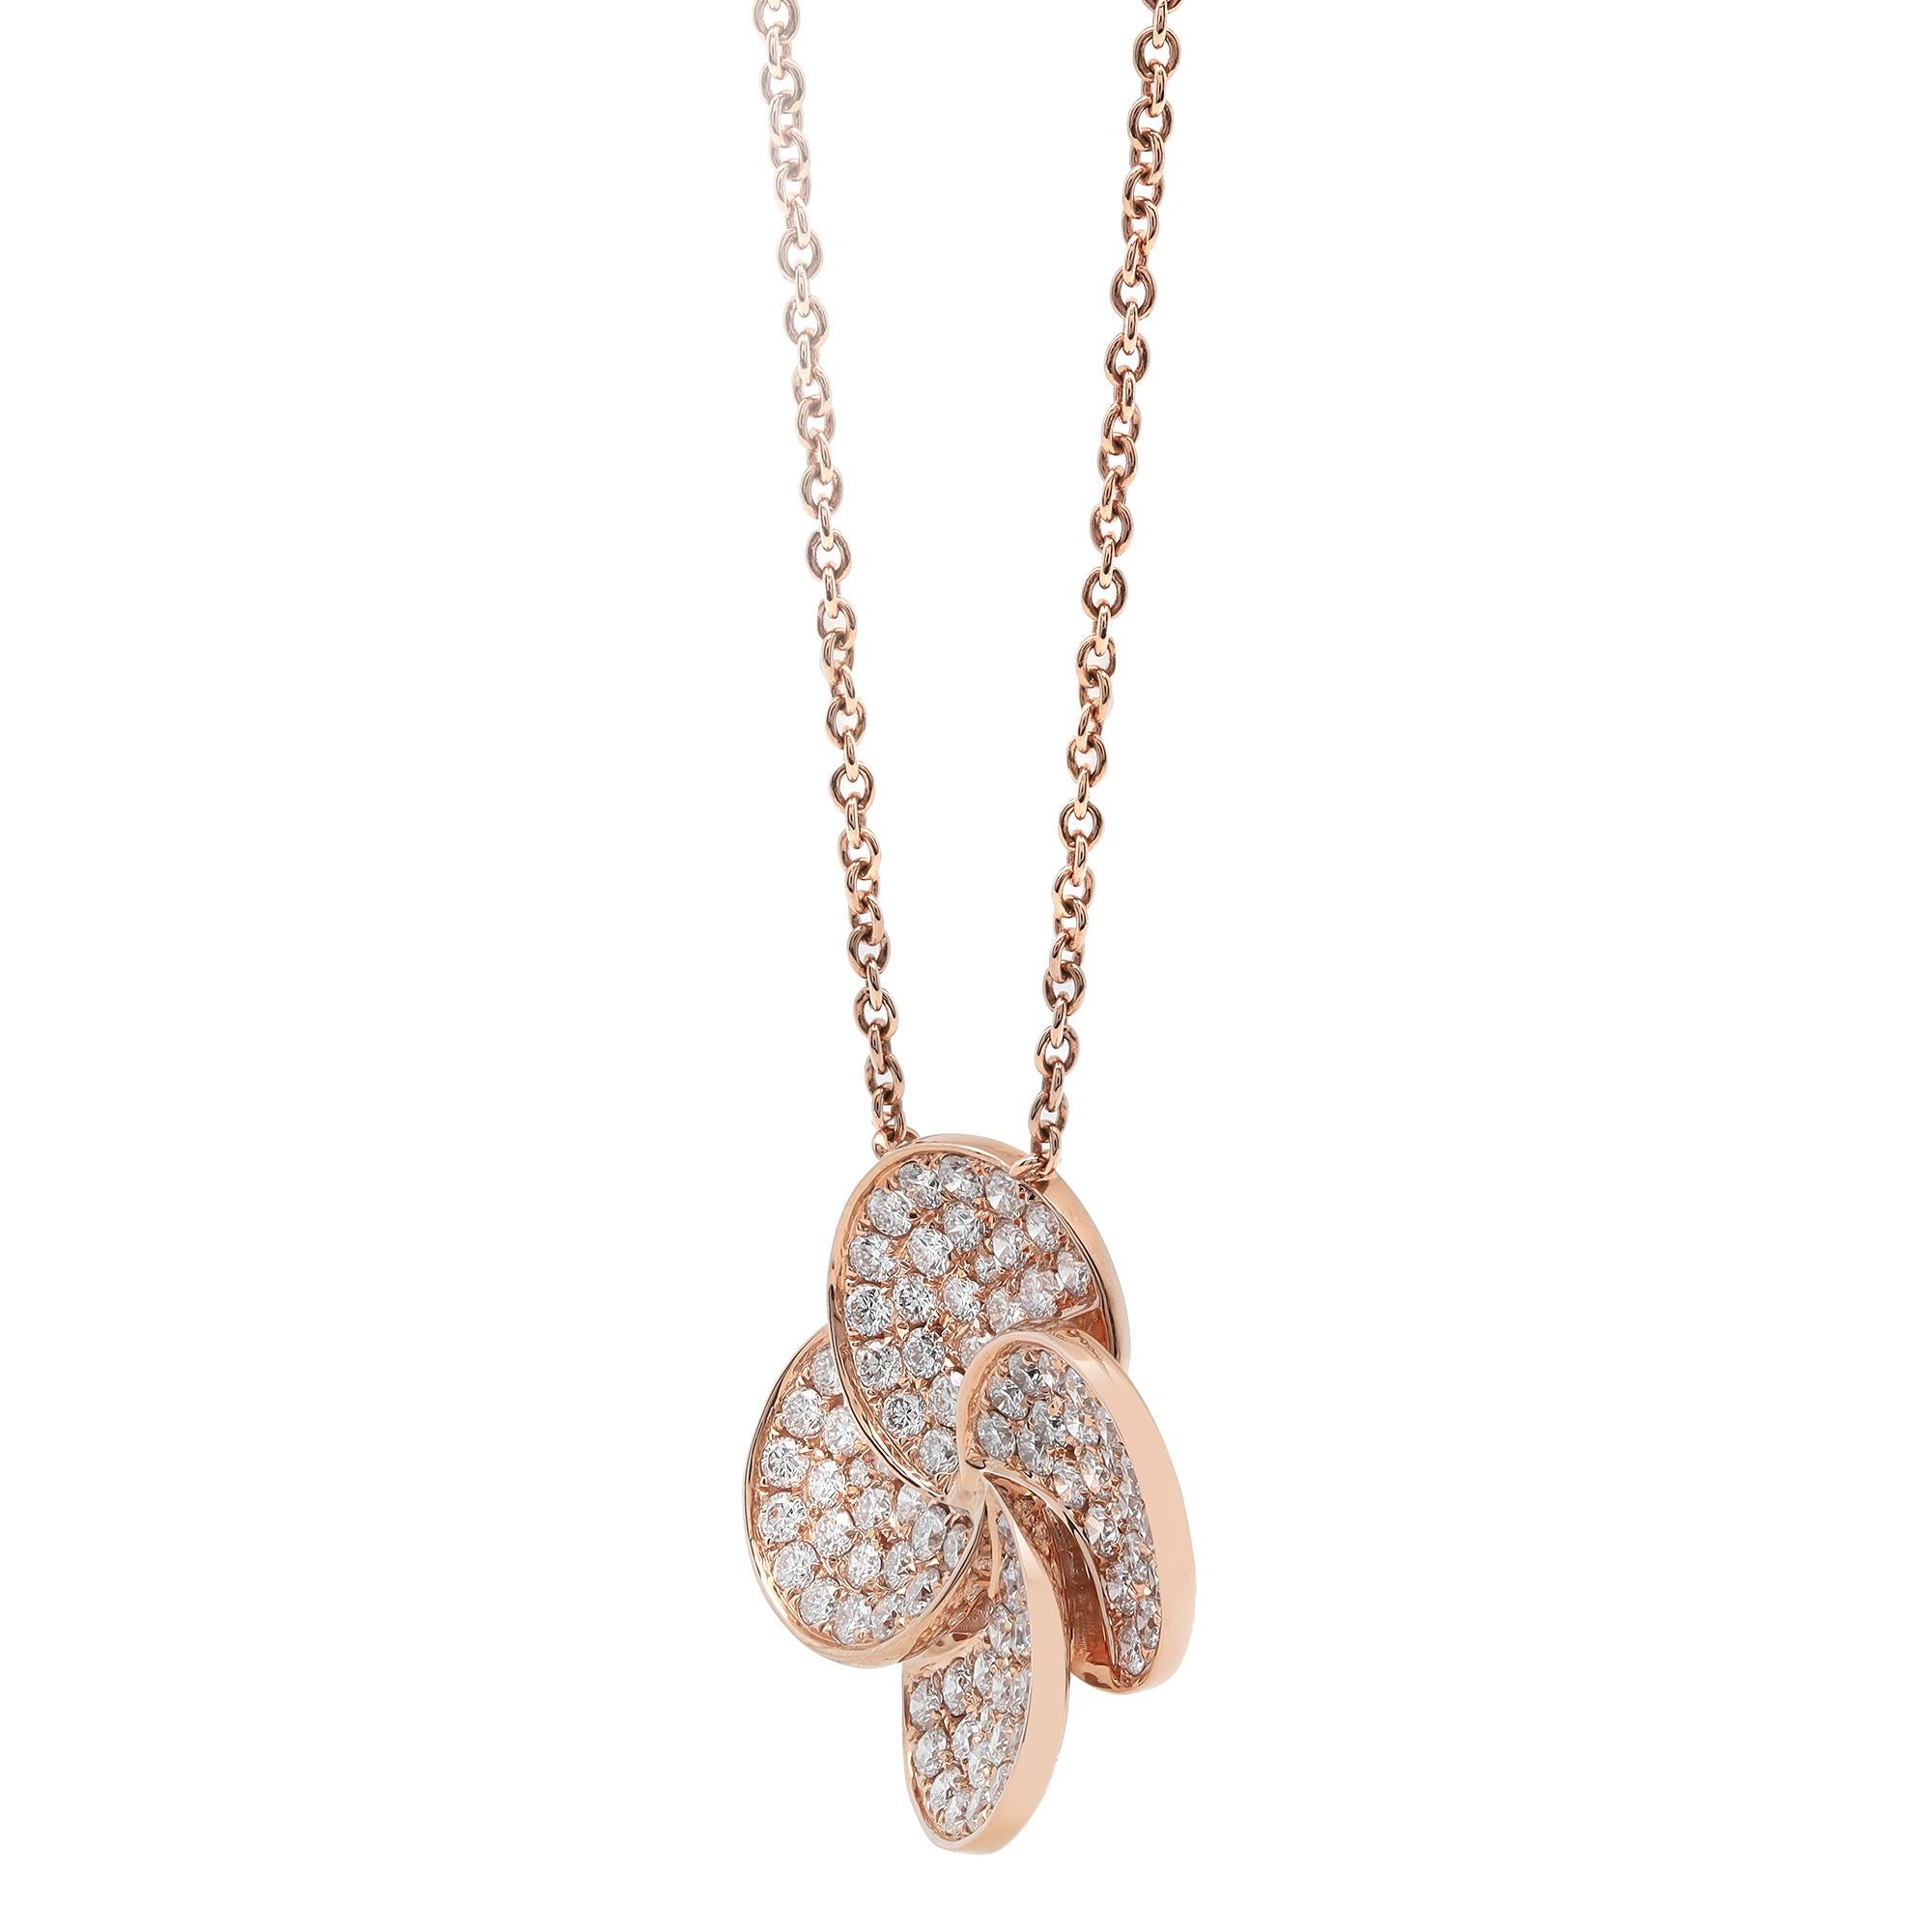 Ce fabuleux collier pendentif fleur en diamants éblouissants est un accent parfait pour tous les looks de jour et de soirée et donne une touche de chic à tous les ensembles avec lesquels vous l'associez. Elle présente des diamants ronds de taille